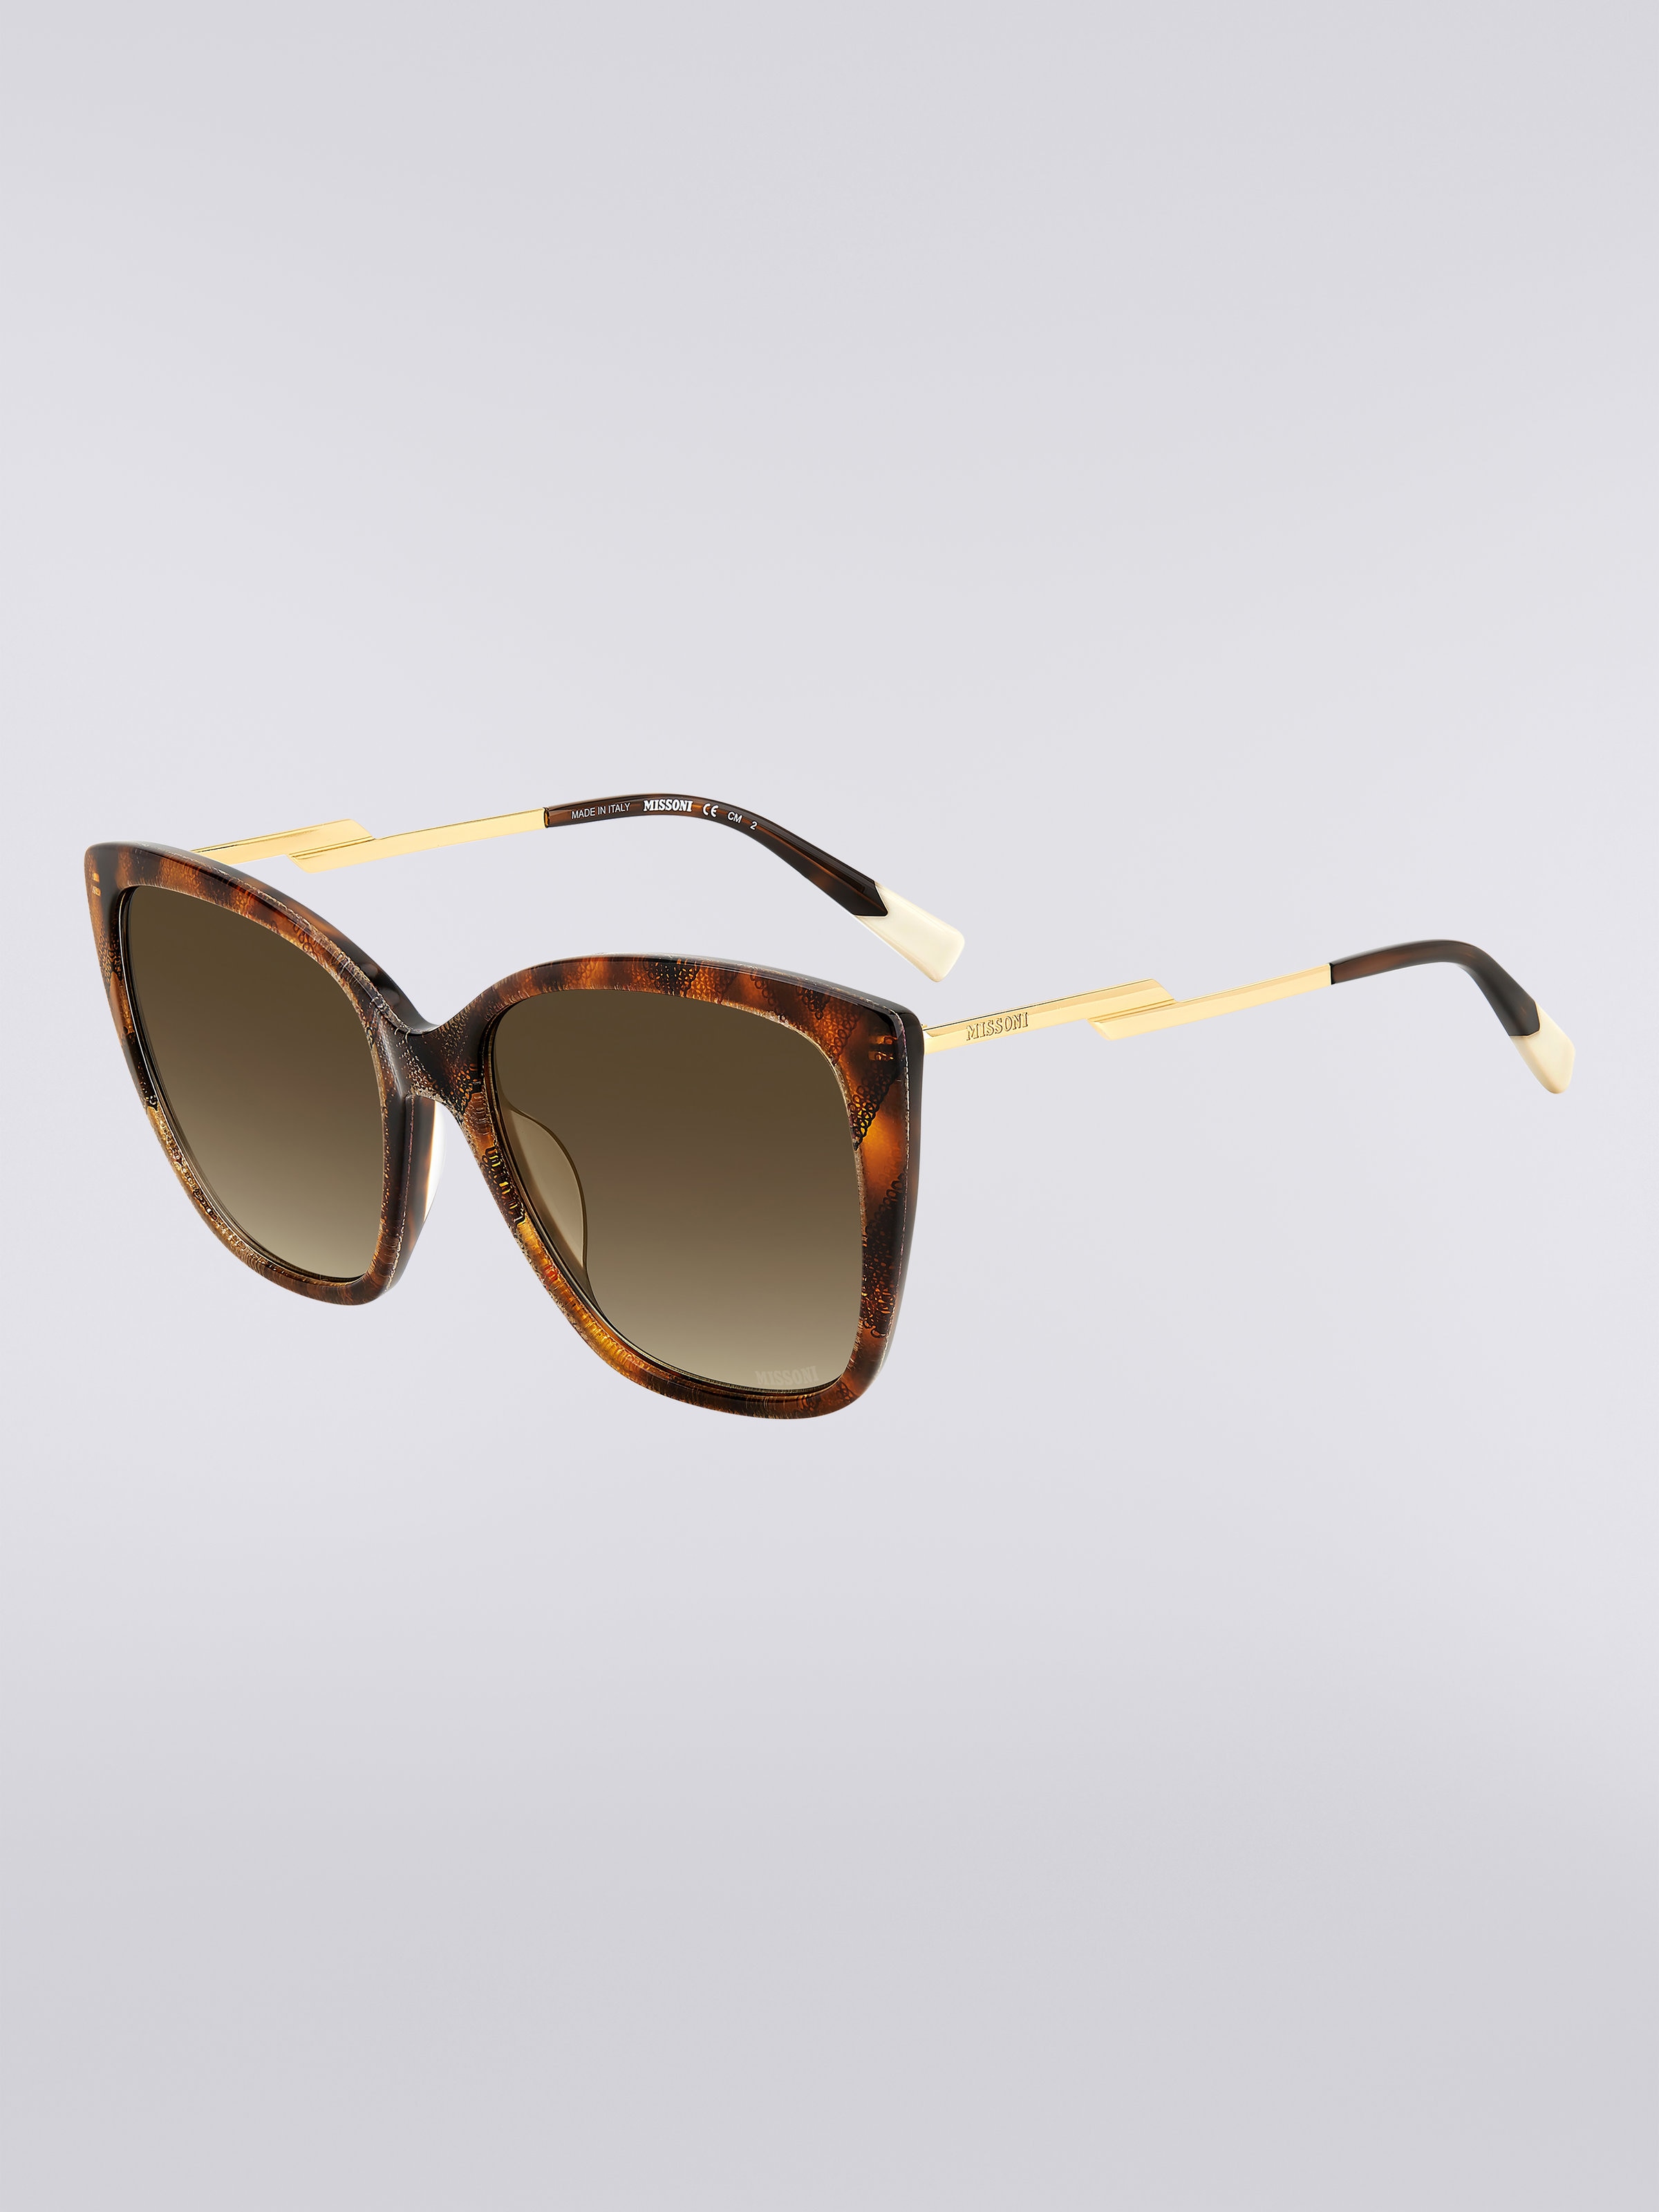 Missoni Dna Acetate Sunglasses, Multicoloured  - 1